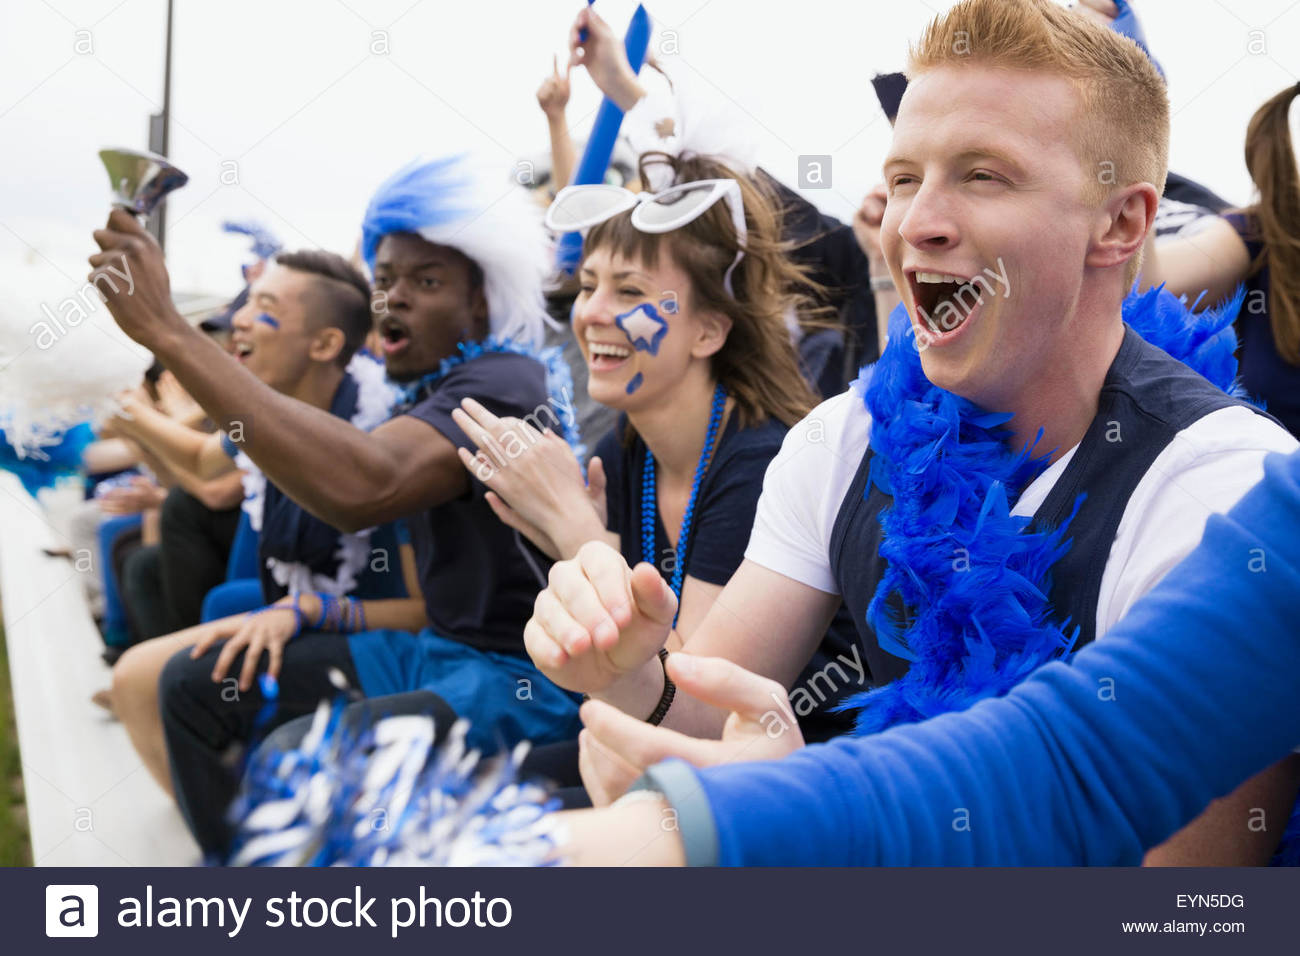 Entusiastas fans en azul vítores gradas evento deportivo Foto de stock